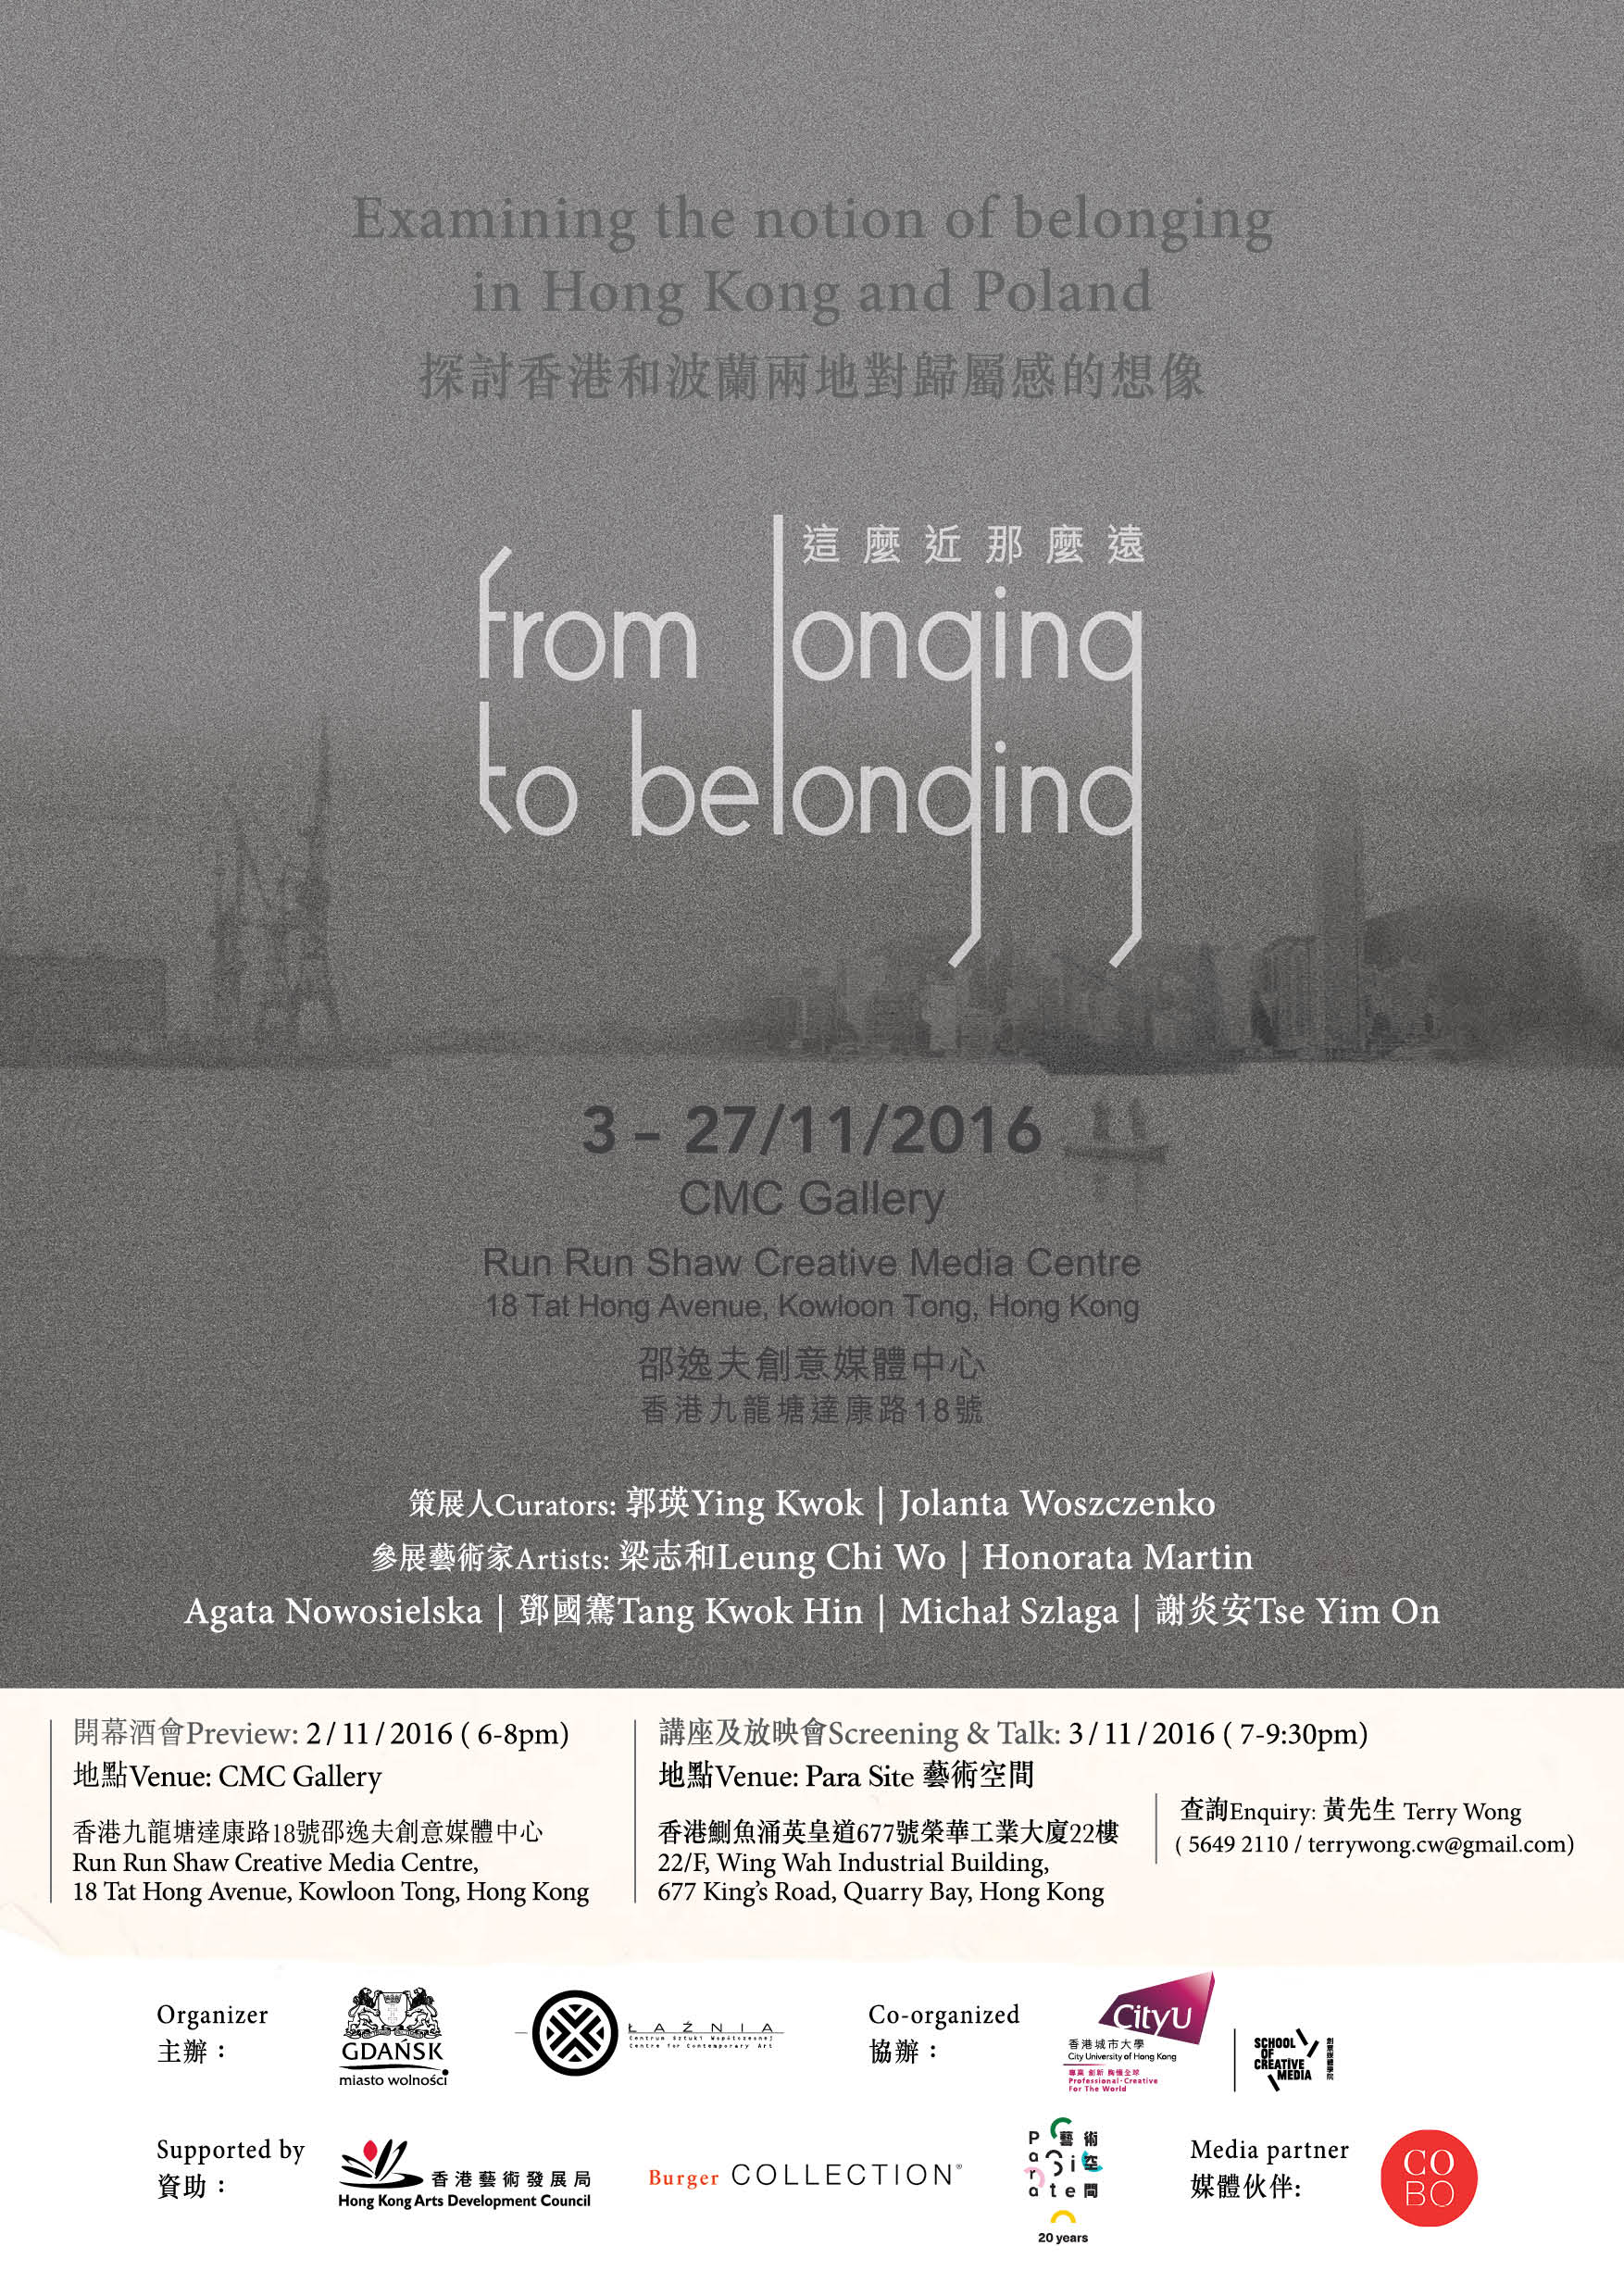 梁志和參與香港城市大學創意媒體學院的聯展“這麼近那麼遠“